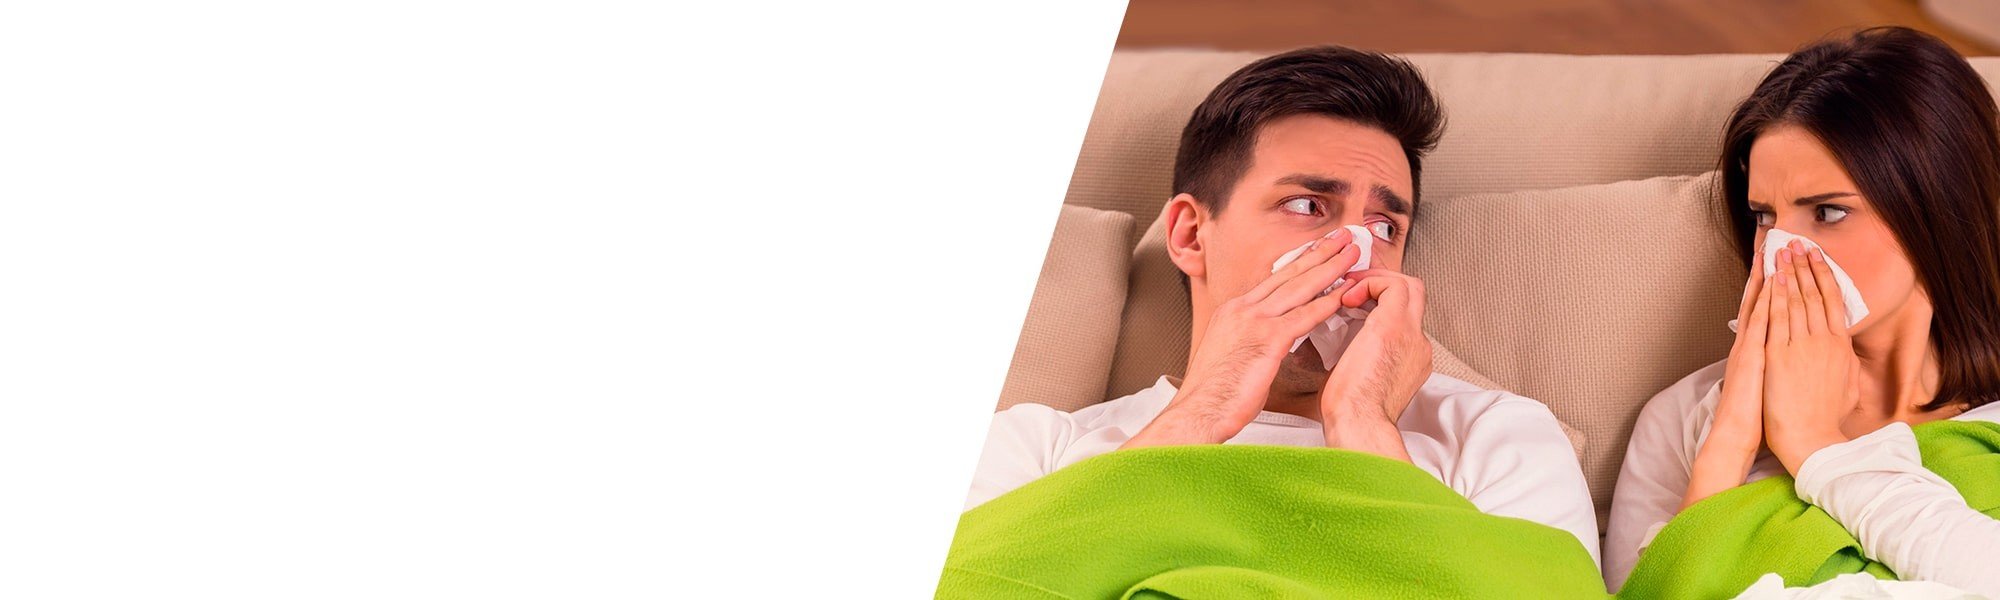 Gripe e constipação Fluimucil